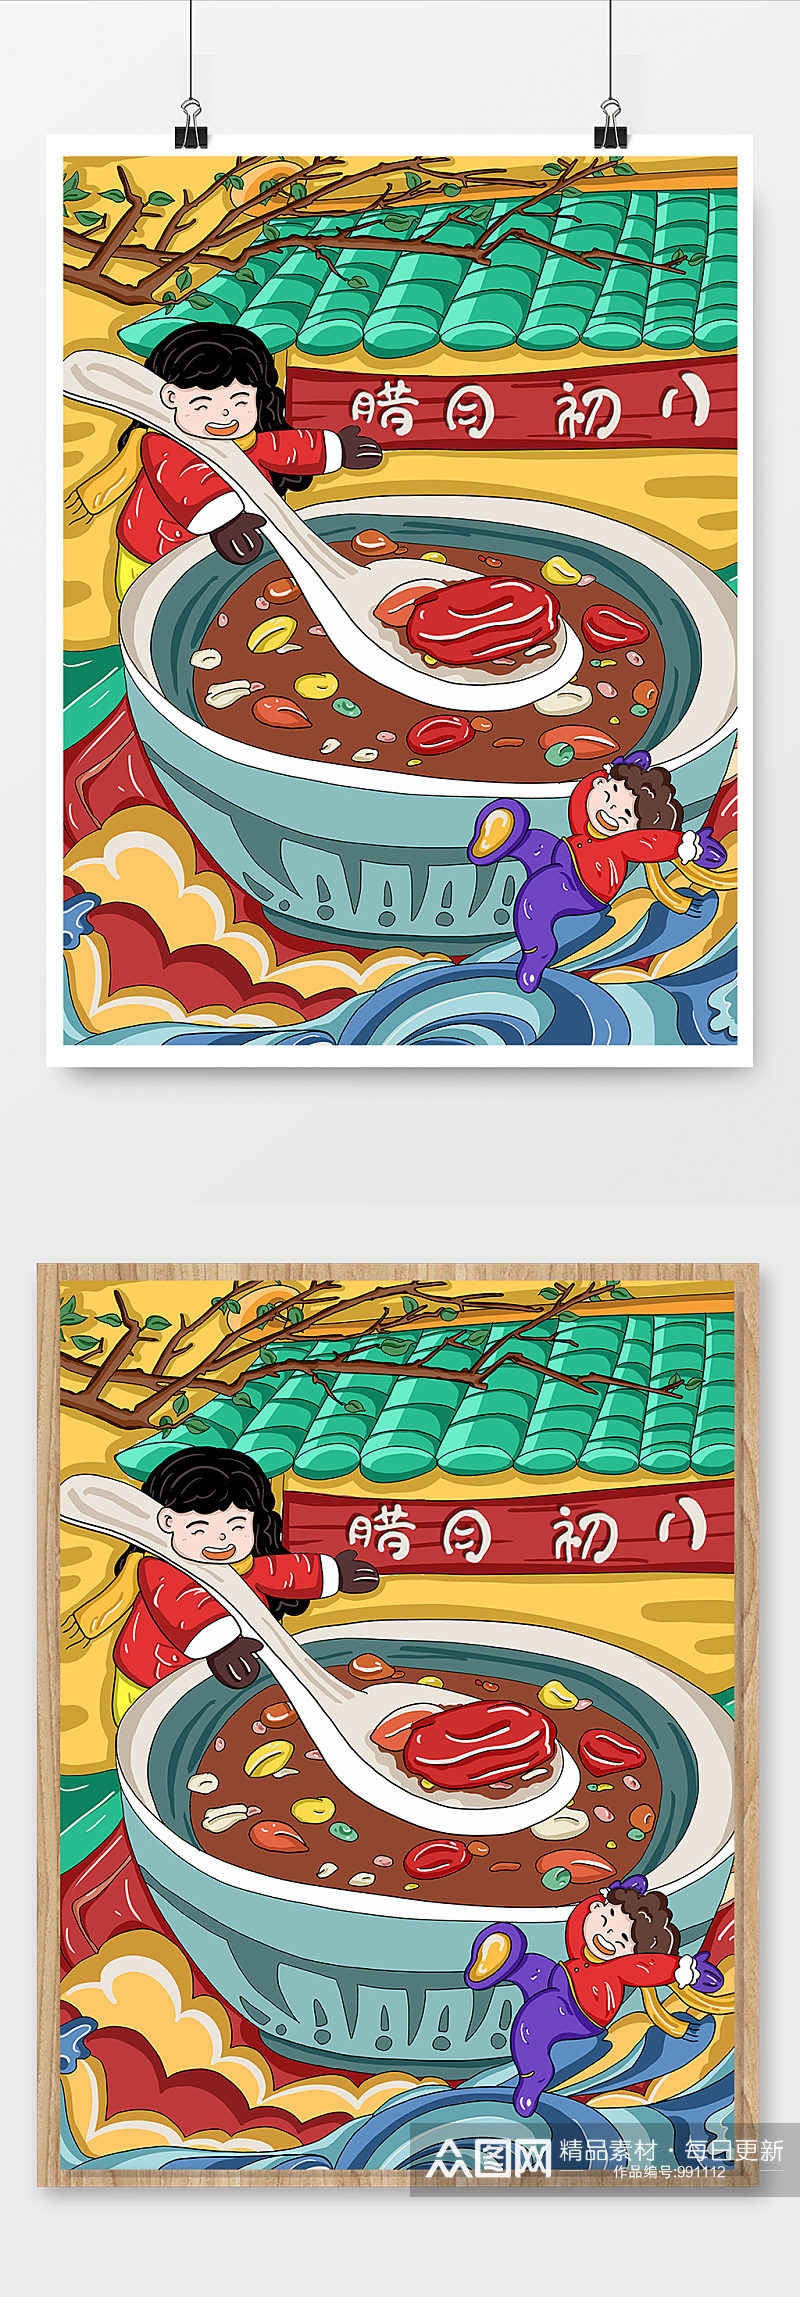 手绘节日卡通可爱插画风中国腊八节海报素材